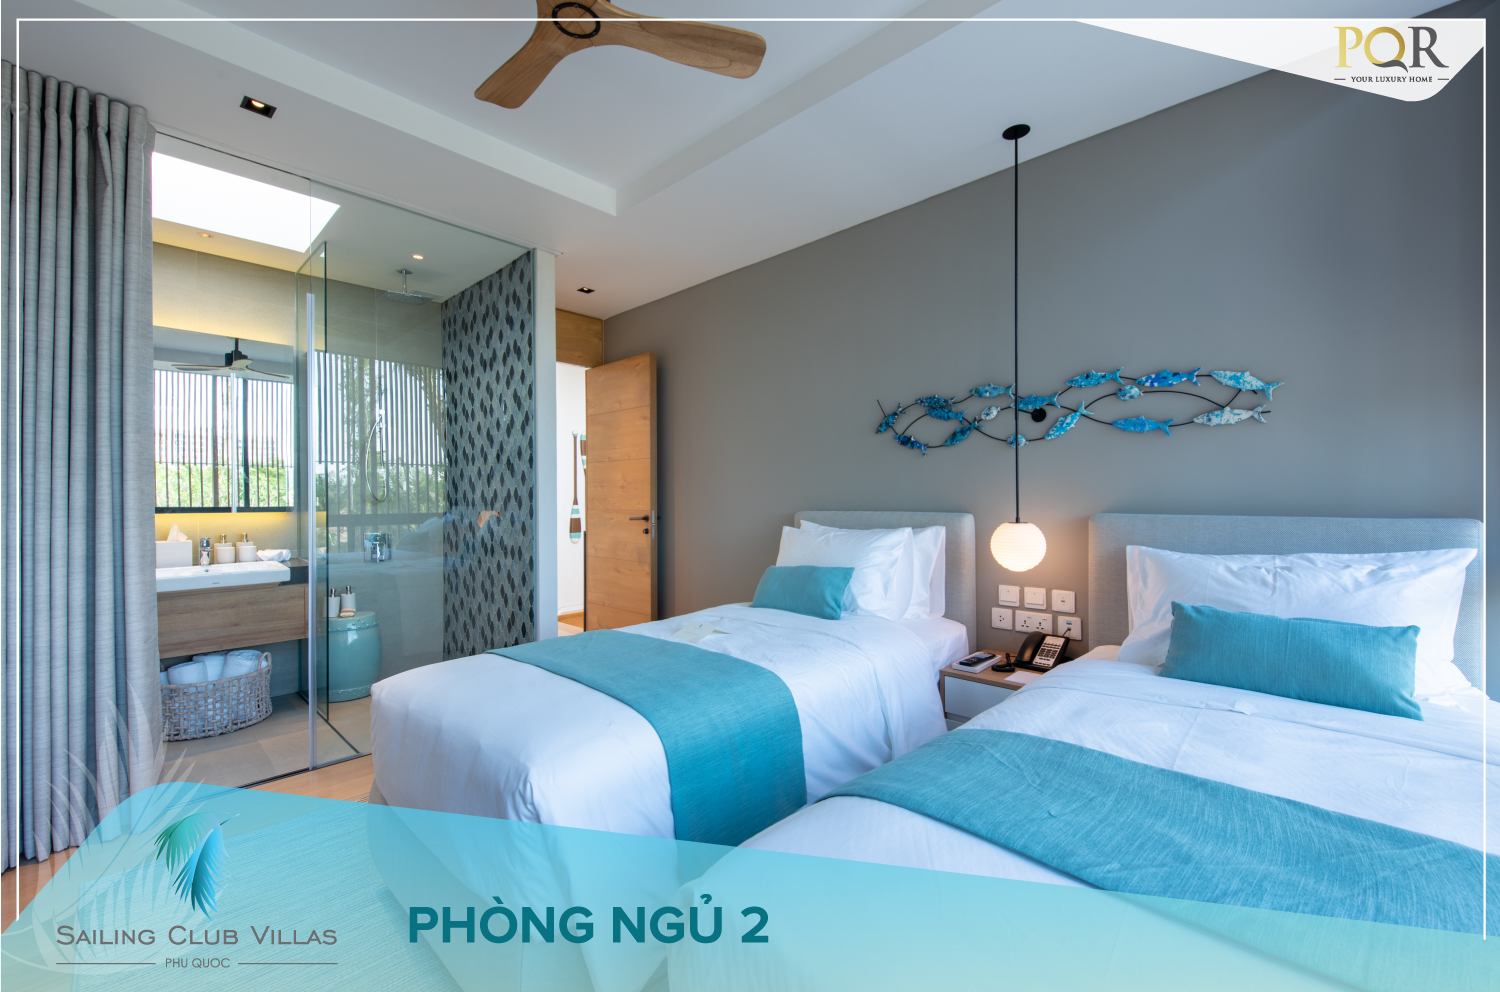 Cập nhật nhà mẫu dự án Sailing Club Villas Phu Quoc mới nhất tháng 10/2019